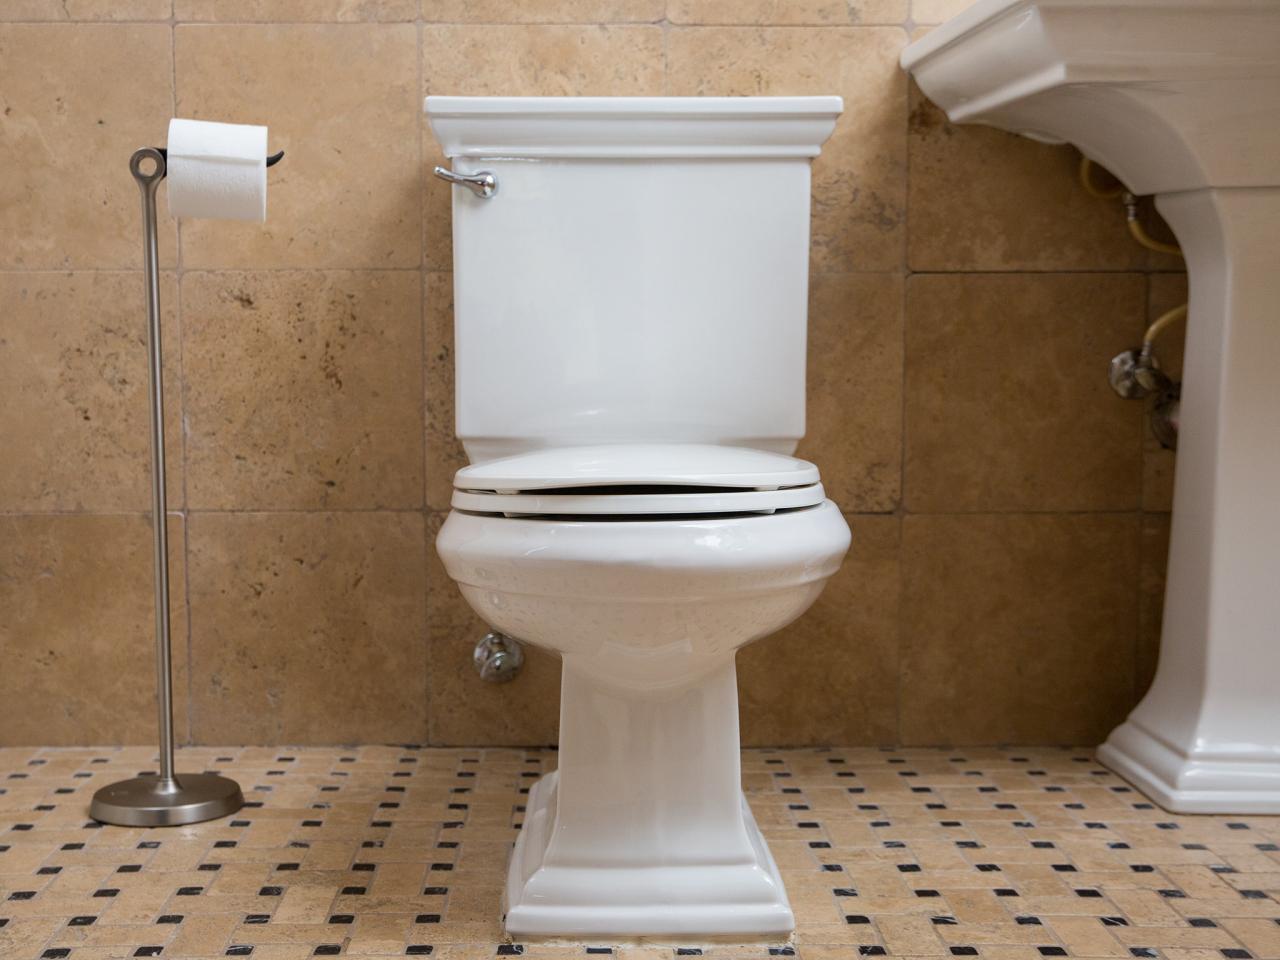 مراحل بررسی و تعمیر عدم قطعی آب سیفون توالت فرنگی